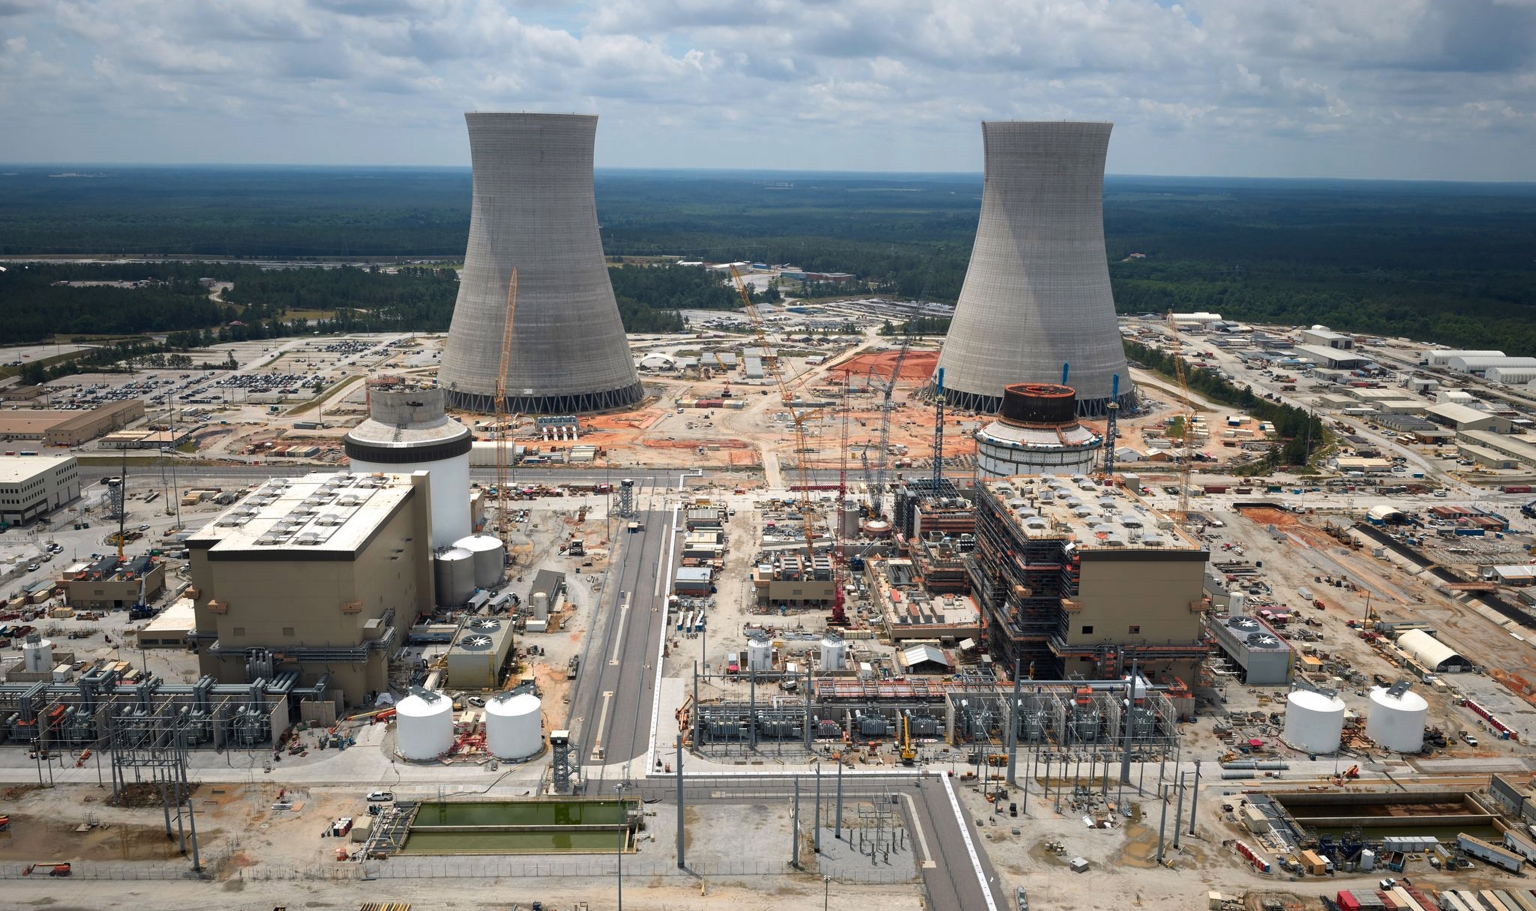 Oglethorpe Power – co-propriétaire des tranches nucléaires Vogtle 3 (gauche) et Vogtle 4 actuellement en construction – a prévu de constituer des réserves budgétaires afin de pouvoir faire face à d’éventuels retards de mise en service.